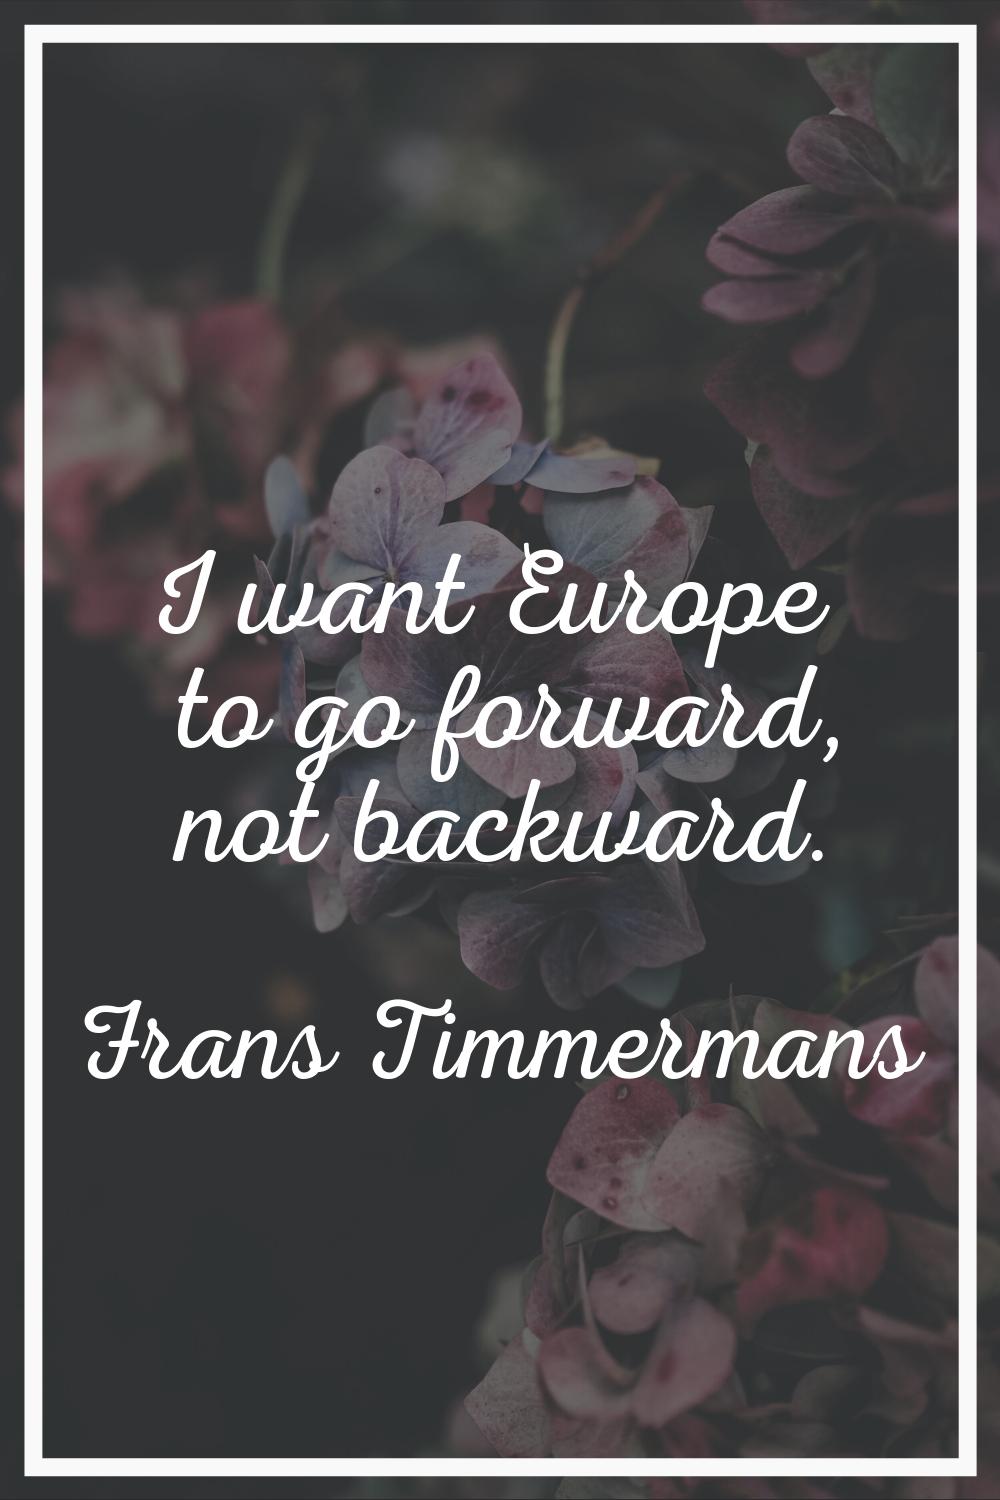 I want Europe to go forward, not backward.